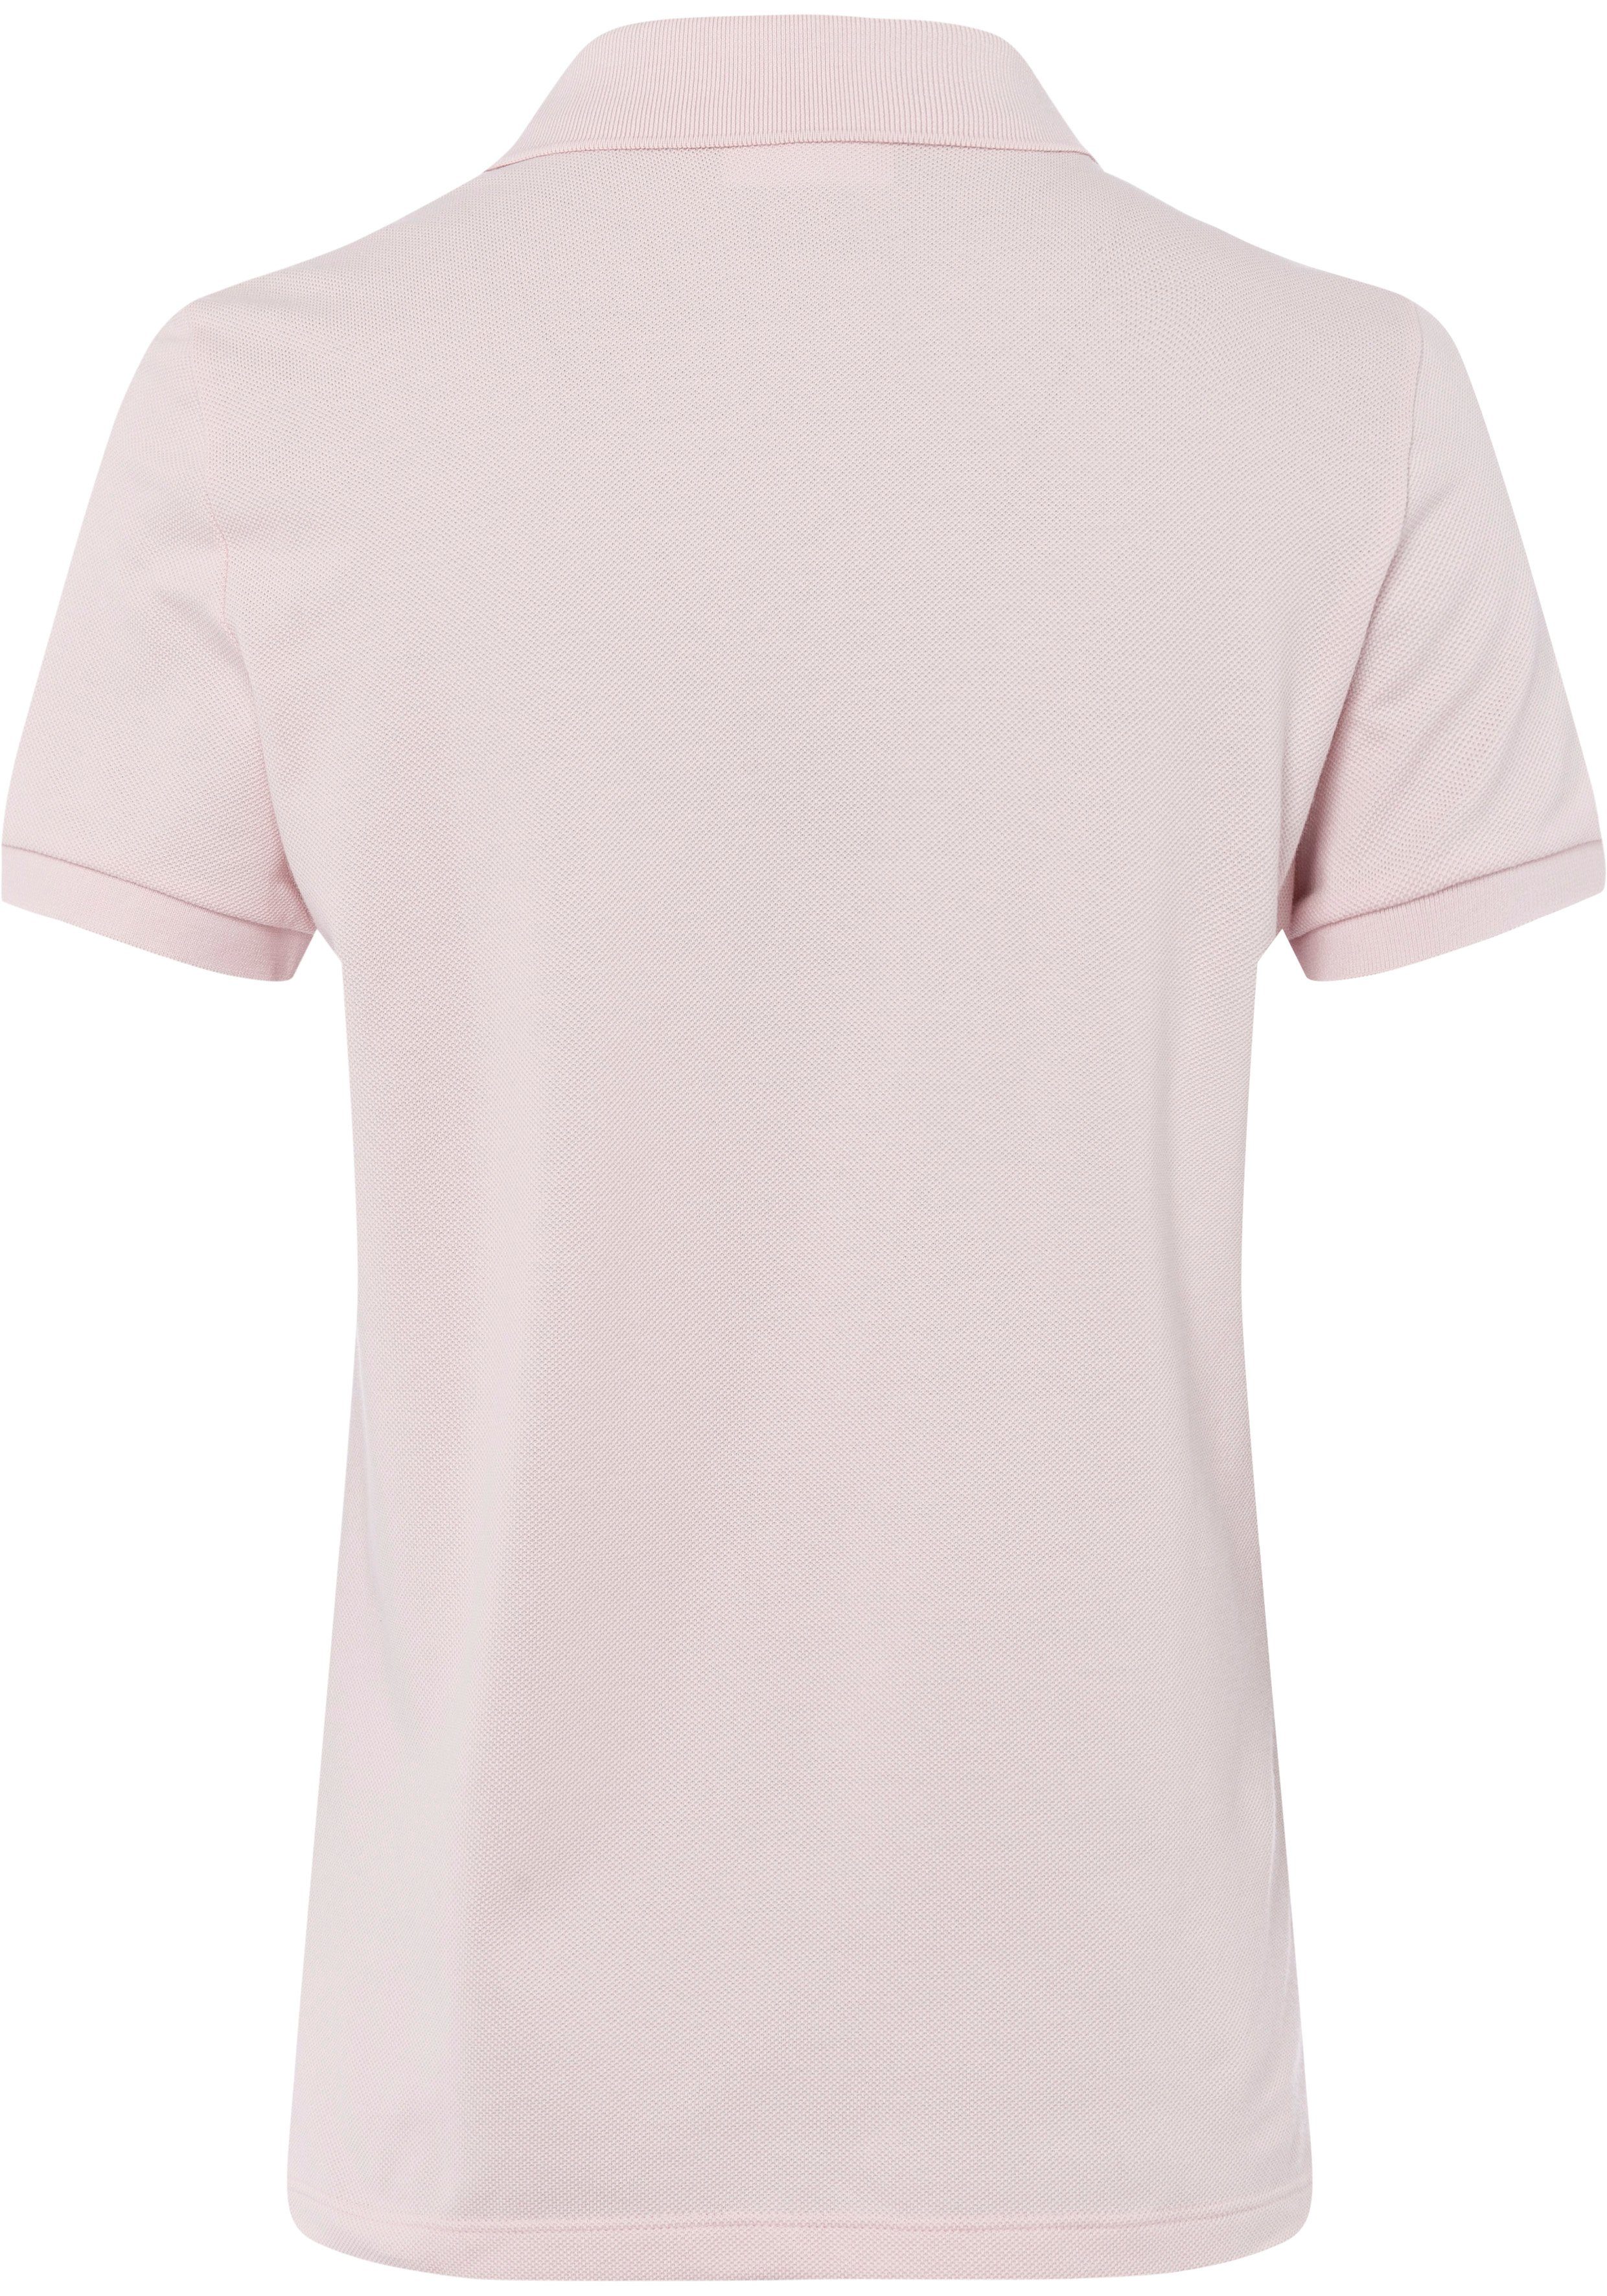 Lacoste-Logo-Patch Brust der Lacoste mit rosa Poloshirt auf